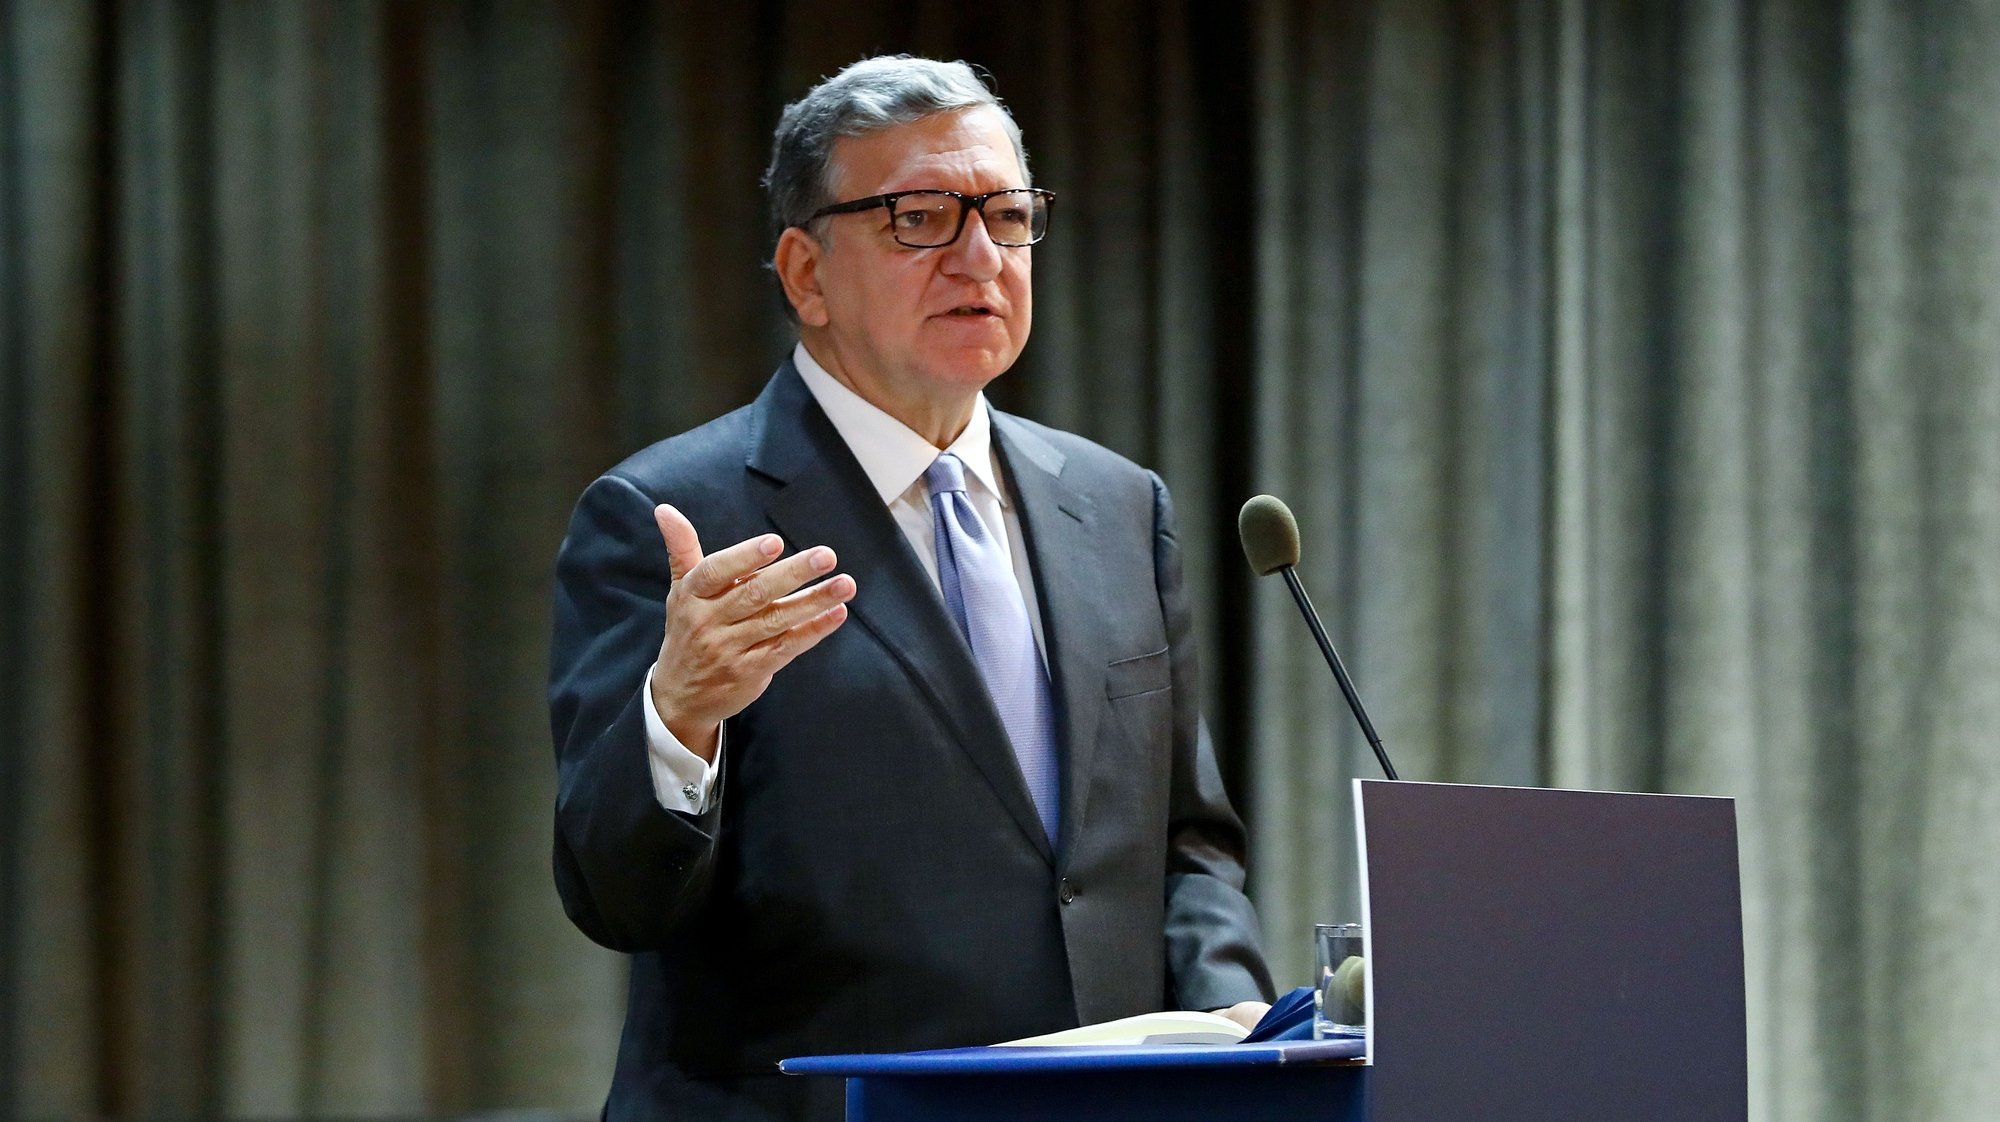 O diretor do Centro de Estudos Europeus, José Manuel Durão Barroso, intervém na conferência “Presidência do Conselho da União Europeia 2021”, na Universidade Católica, em Lisboa, 23 de novembro de 2020. Portugal assumirá a Presidência do Conselho da União Europeia no primeiro semestre de 2021, sucedendo à Alemanha. ANTÓNIO PEDRO SANTOS/LUSA